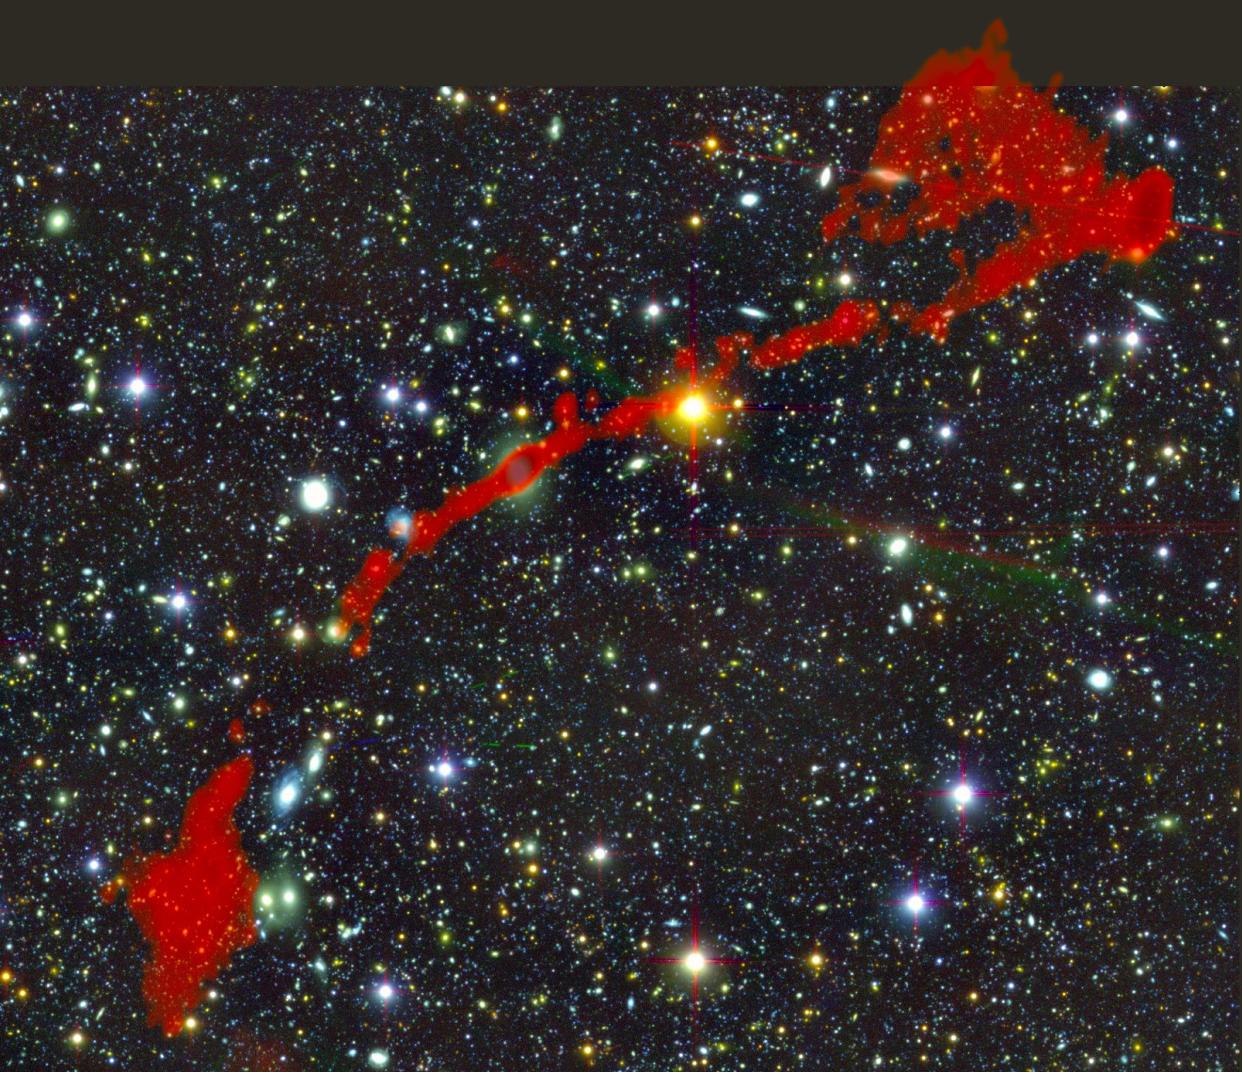 <span class="caption">Les deux radiogalaxies géantes trouvées avec le télescope MeerKAT. En arrière-plan, le ciel vu en lumière optique. Le rayonnement radio des énormes radiogalaxies, vues par MeerKAT, est superposée en rouge.</span> <span class="attribution"><span class="source">I. Heywood (Oxford/Rhodes/SARAO)</span></span>